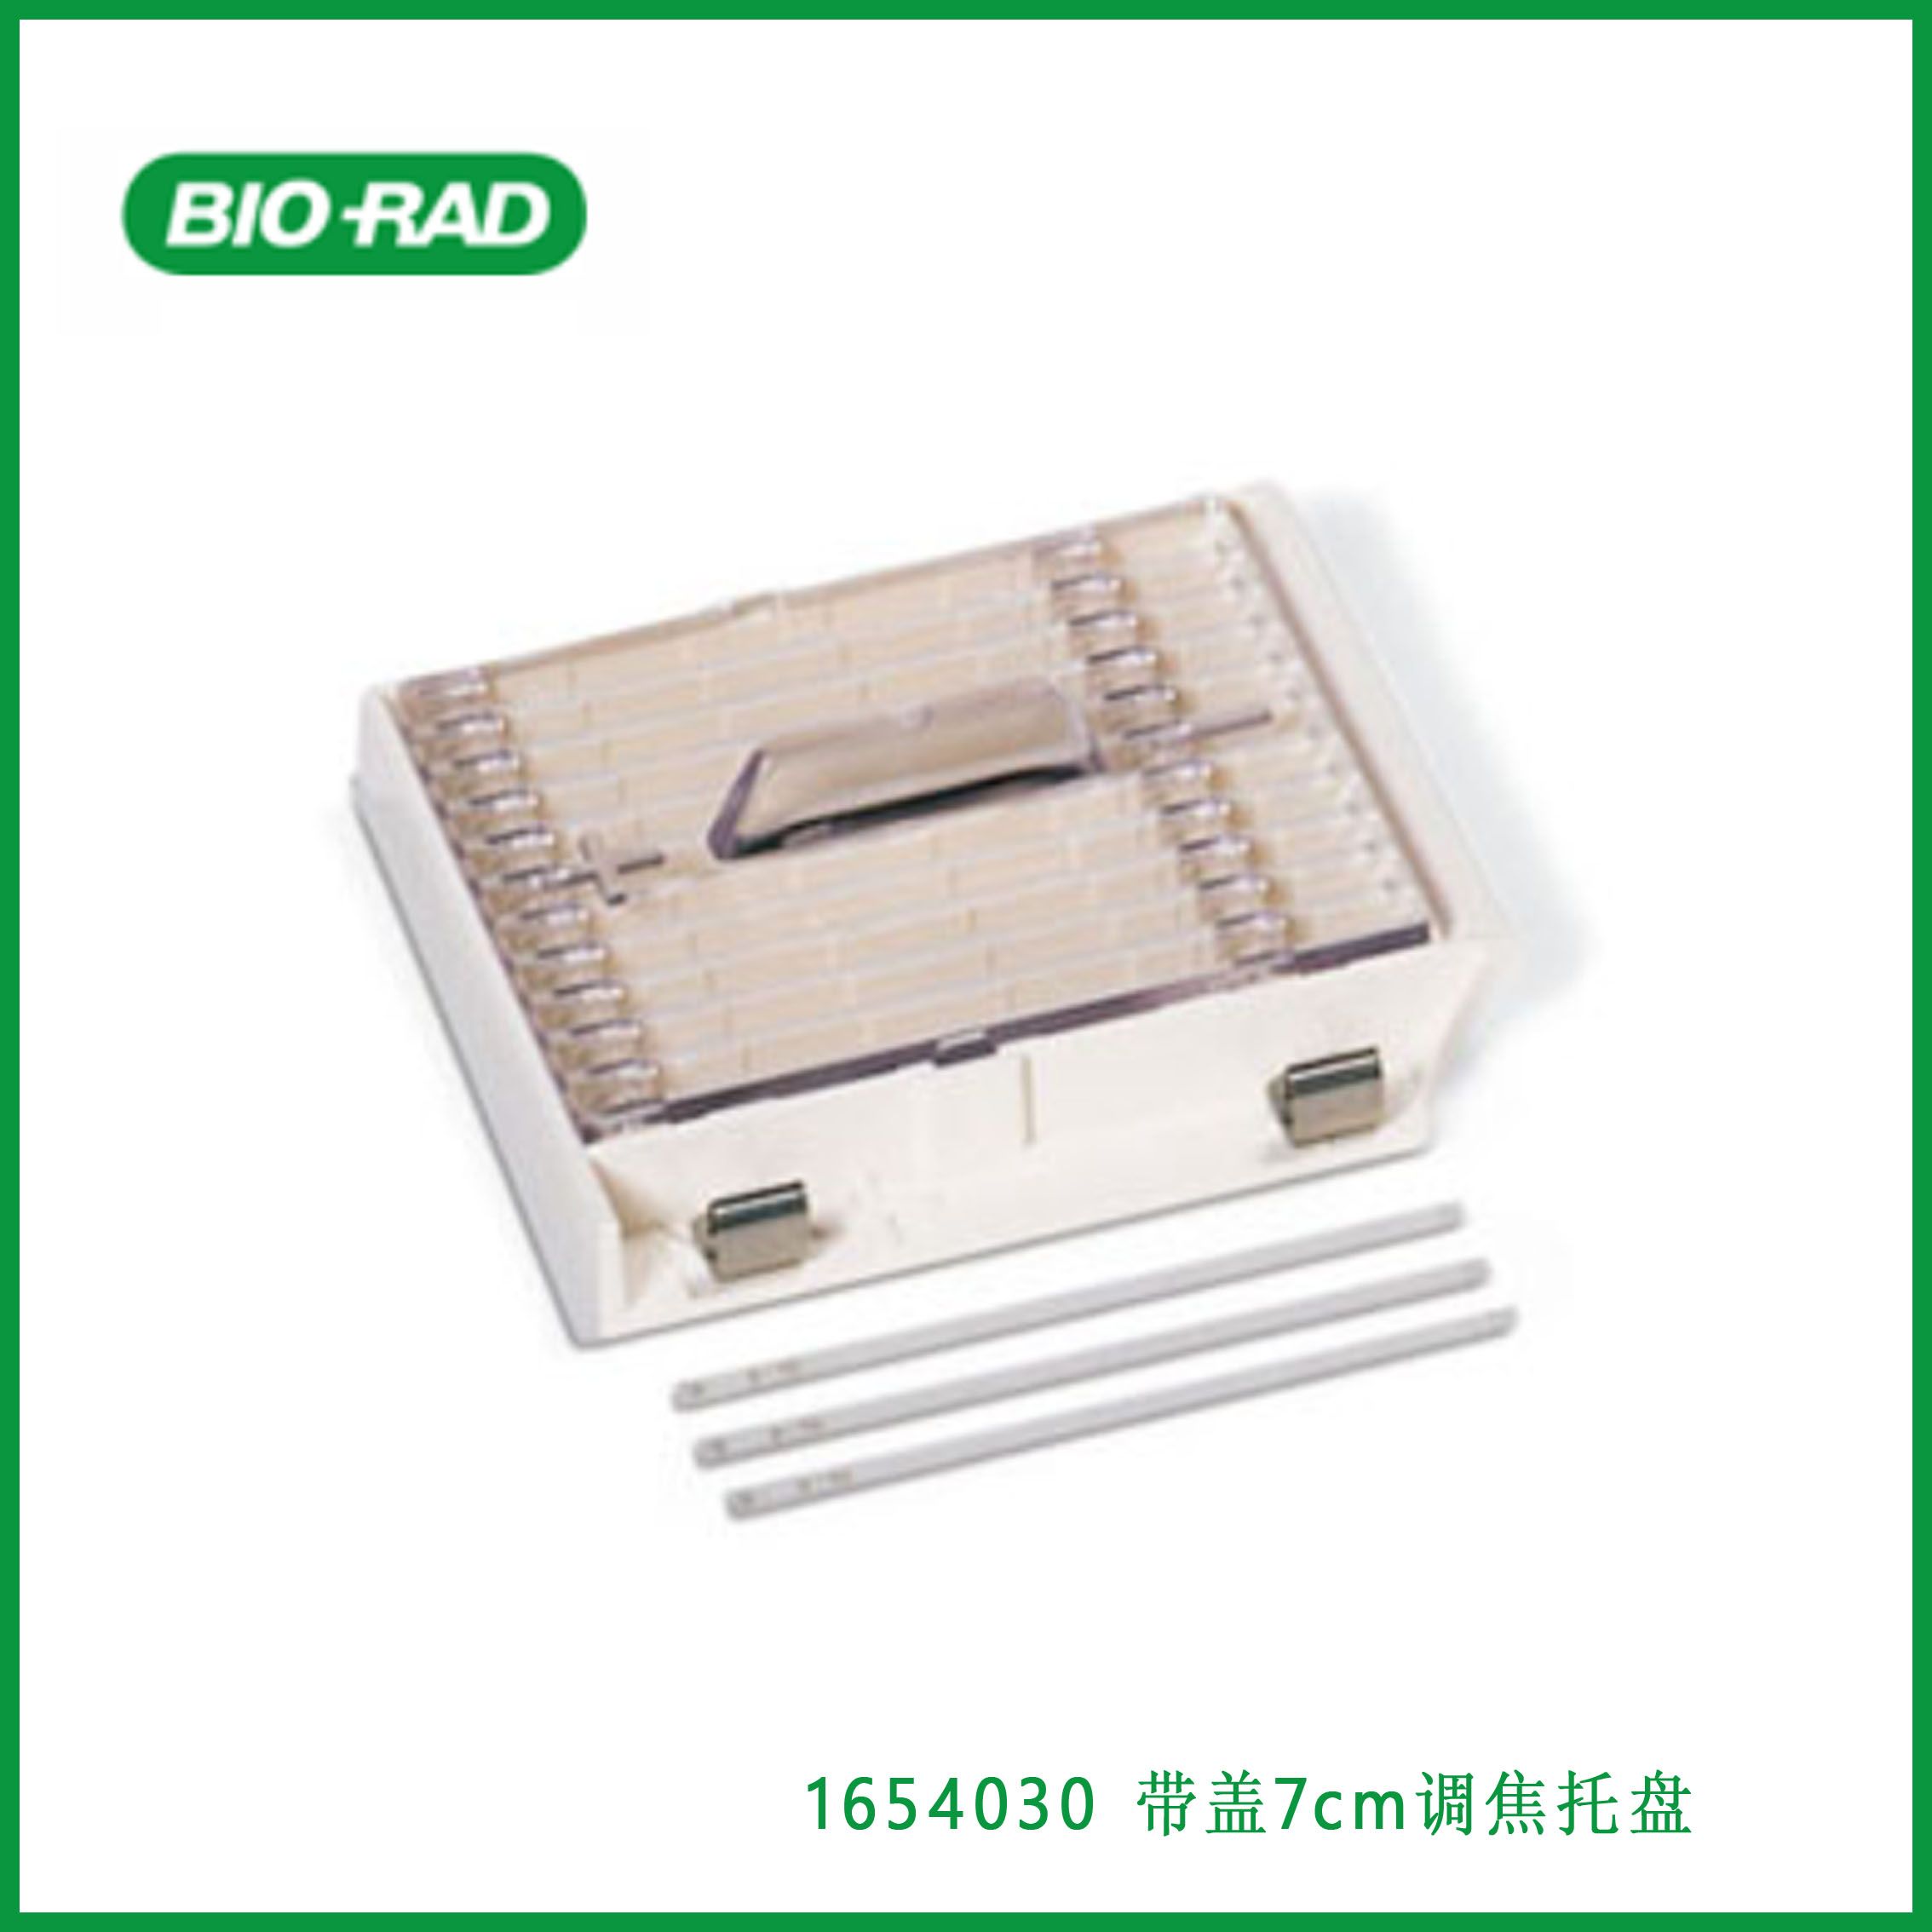 伯乐Bio-Rad1654030 7 cm Focusing Tray With Lid，带盖7cm调焦托盘，现货